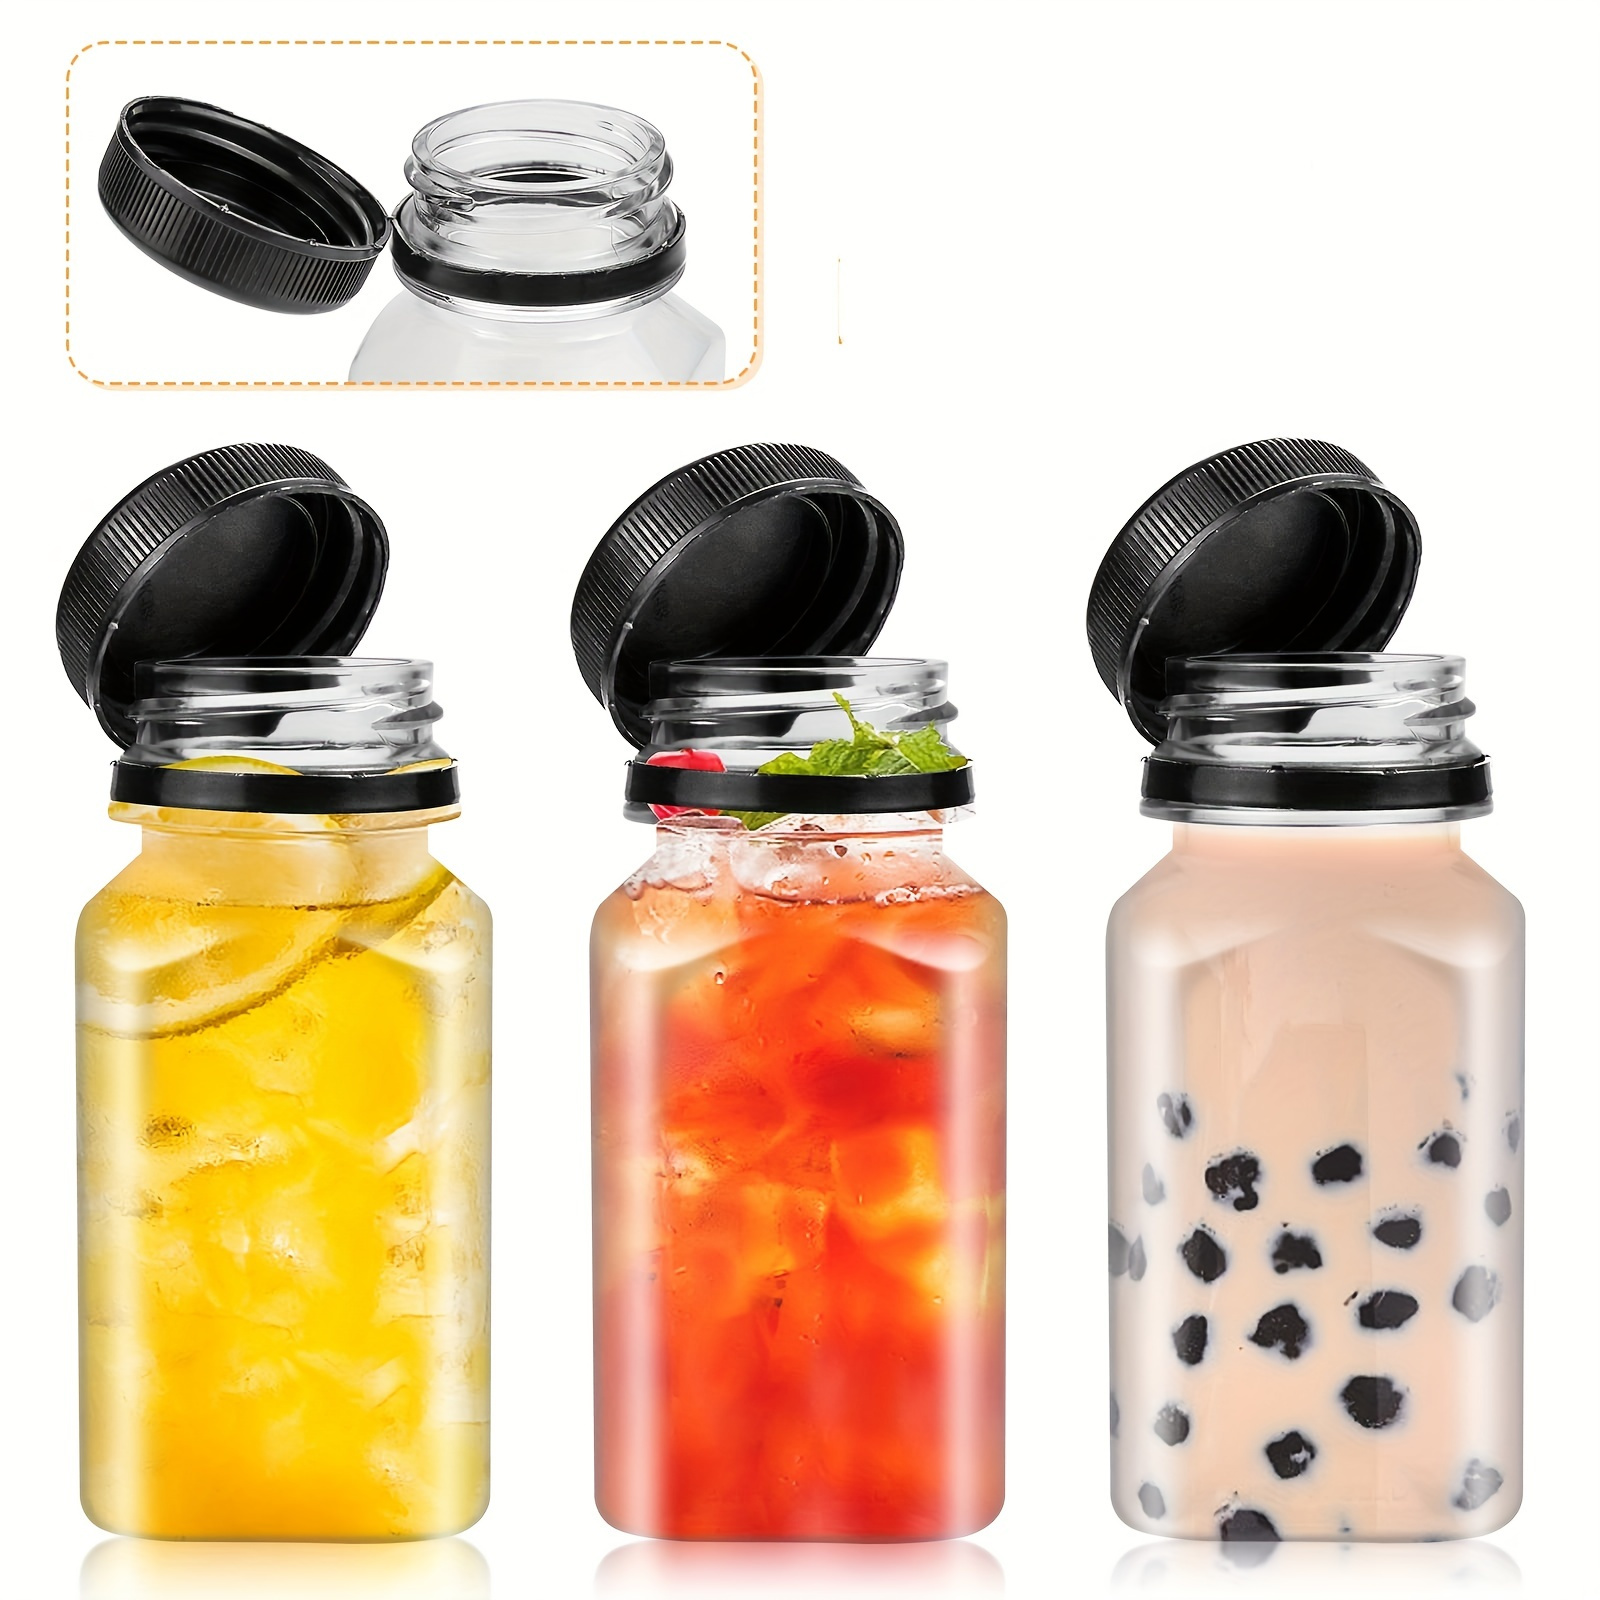 10pcs Plastic Juice Bottles With Lids, 4/5/12/16oz, Reusable Juice